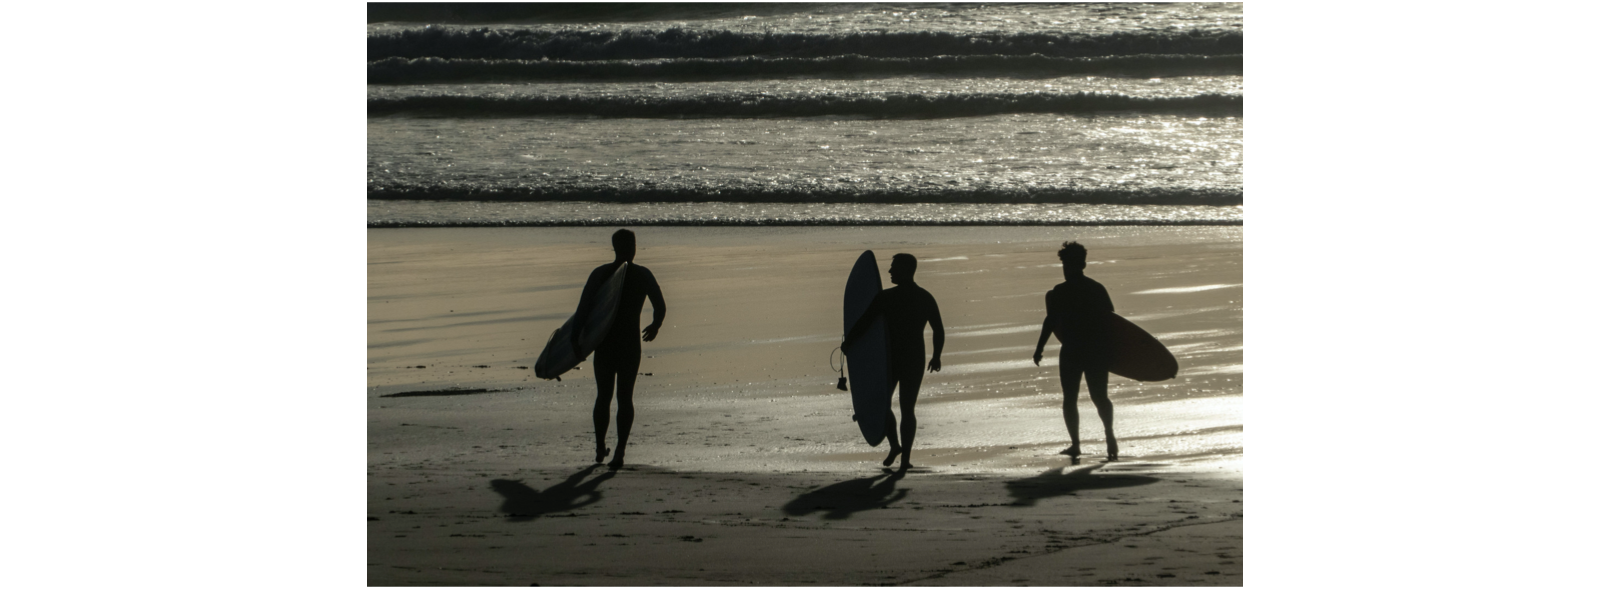 3 surfers on a beach